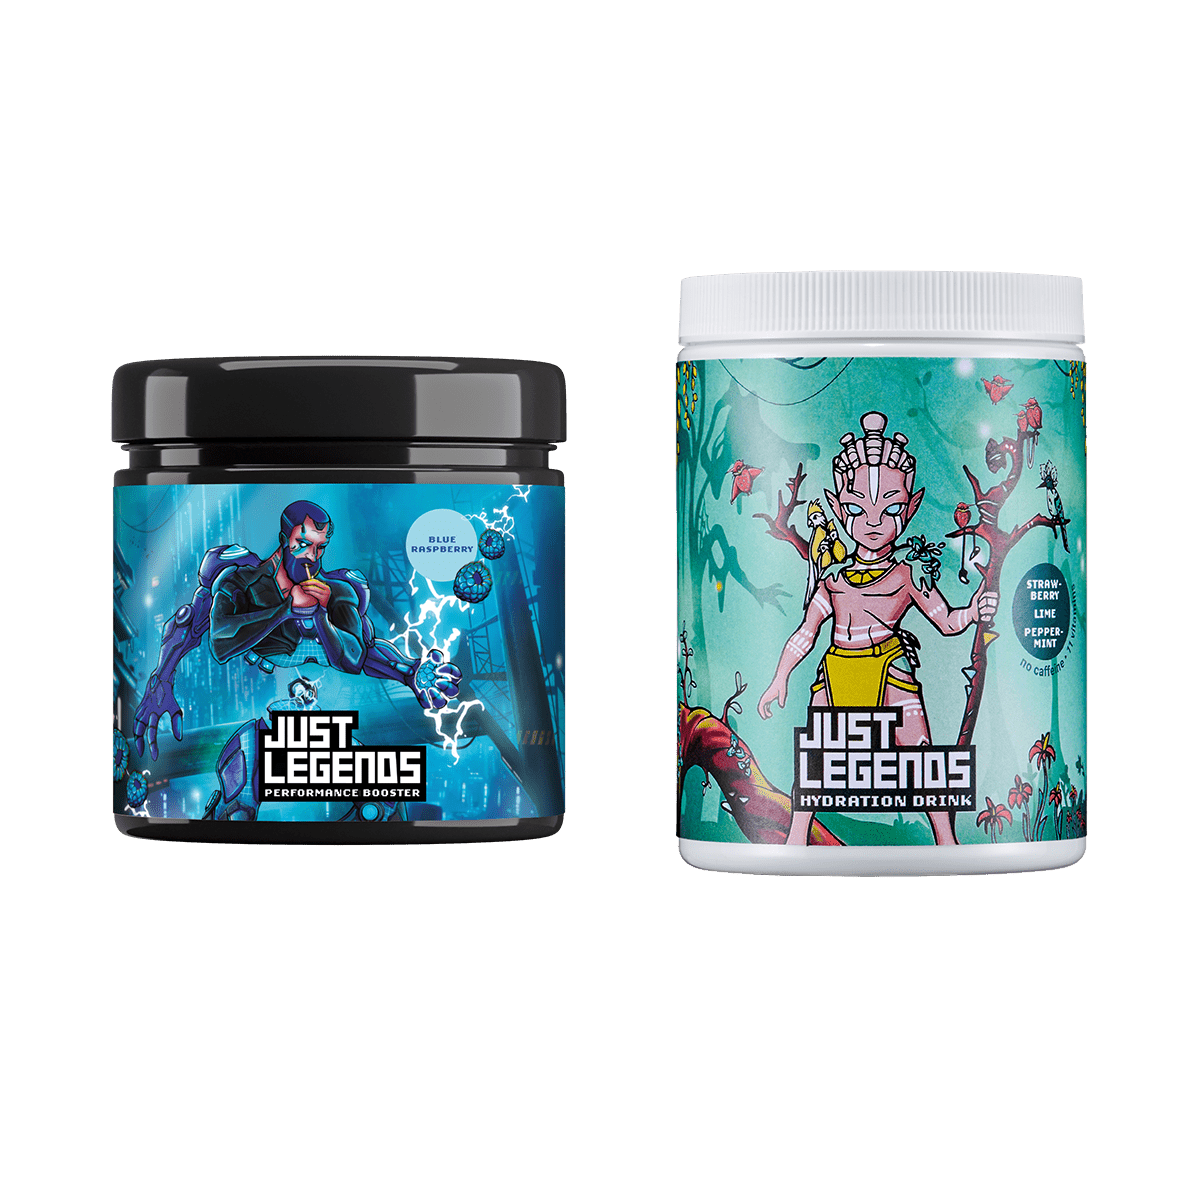 Just Legends Booster & Hydration Pack | Funktionaler, veganer Multipack auf Pulverbasis ohne Zucker, mit wenig Kalorien, vielen Vitaminen und natürlichen Aromen.